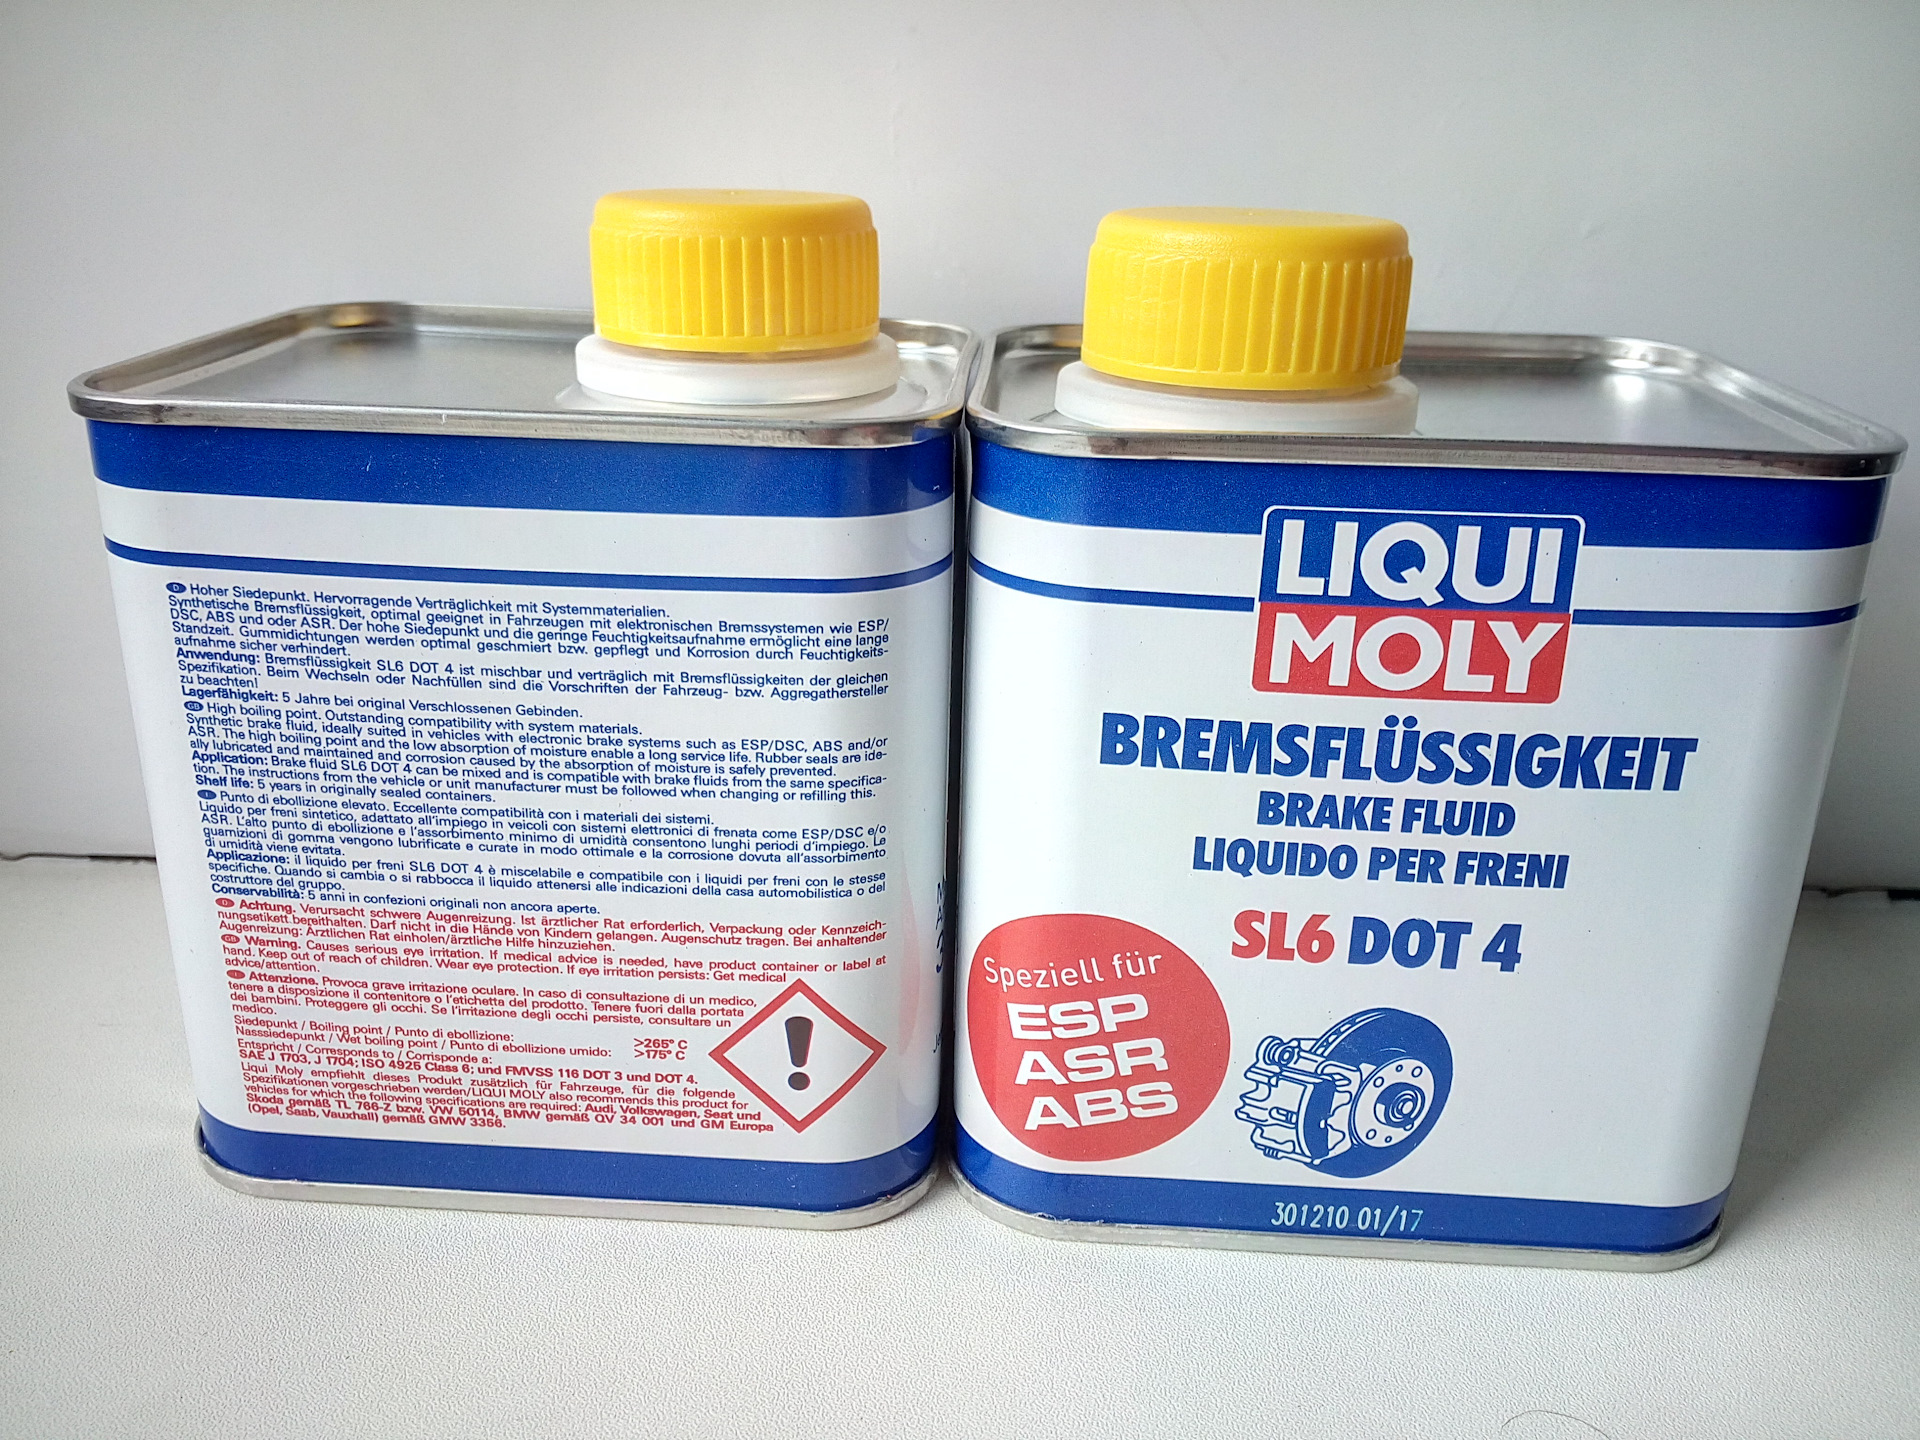 Замена тормозной жидкости на Liqui Moly Bremsenflussigkeit SL6 DOT